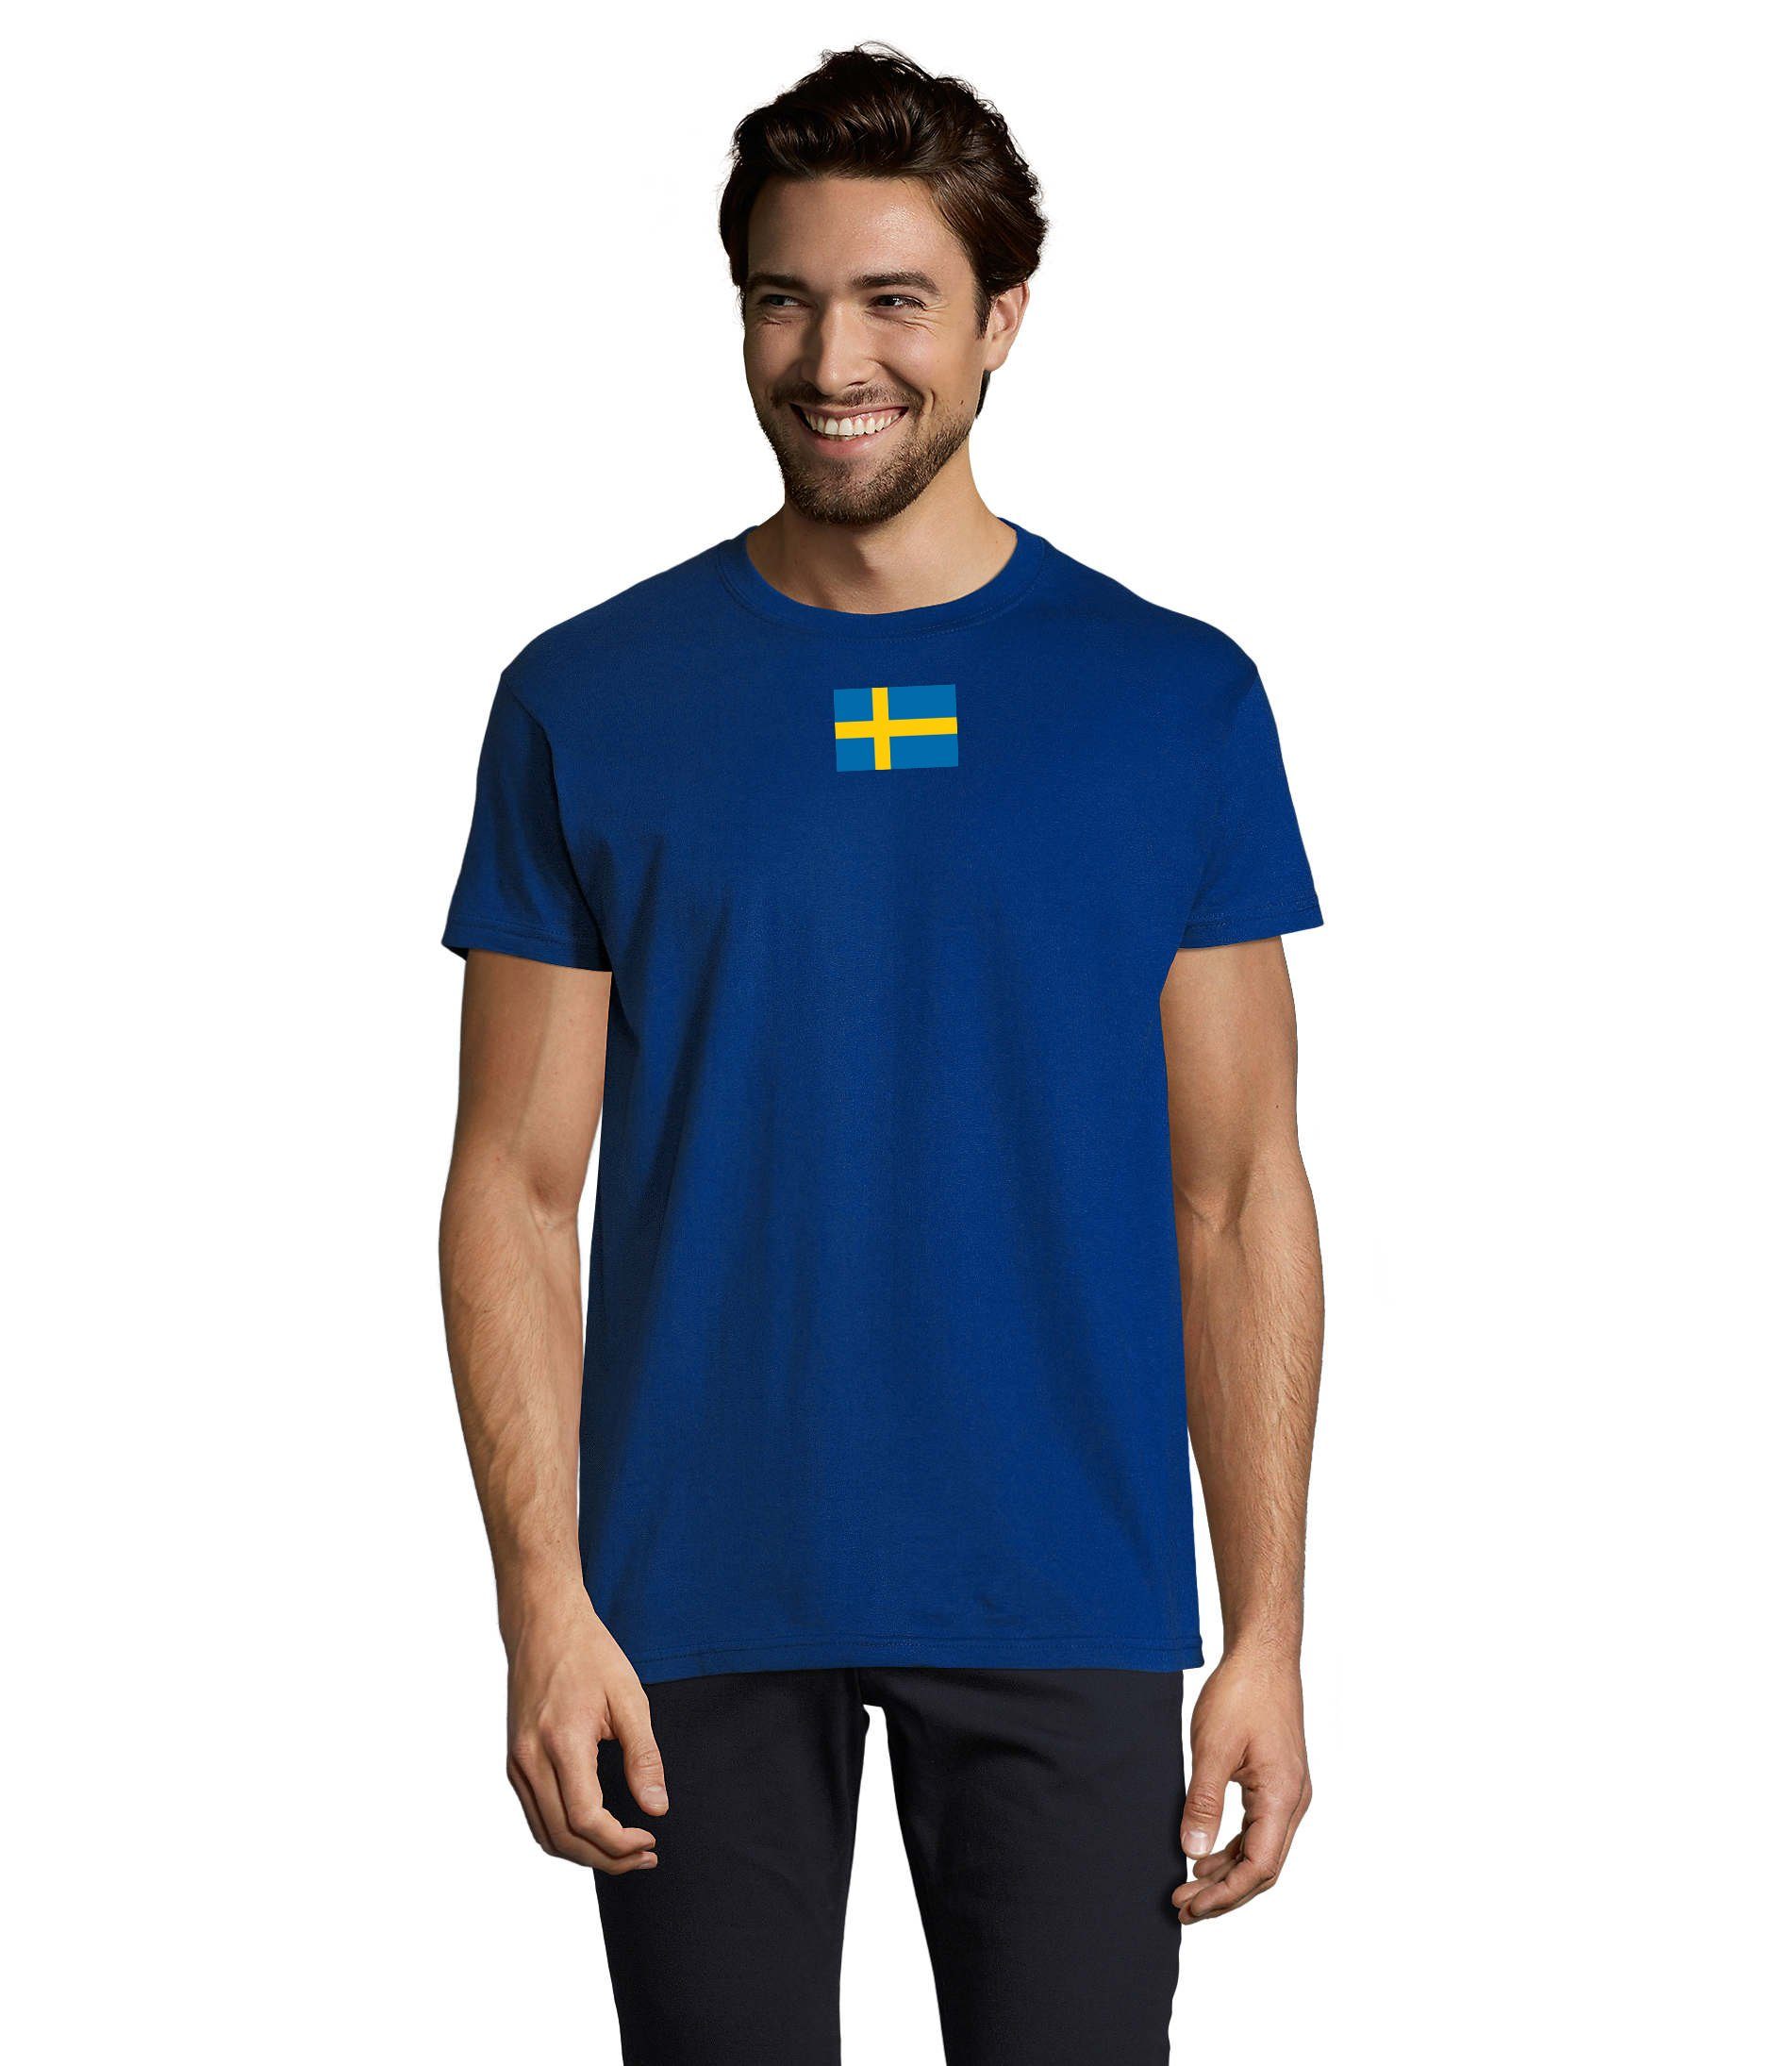 Schweden Peace T-Shirt Herren Royalblau Brownie & USA Air Armee Ukraine Army Nato Force Blondie